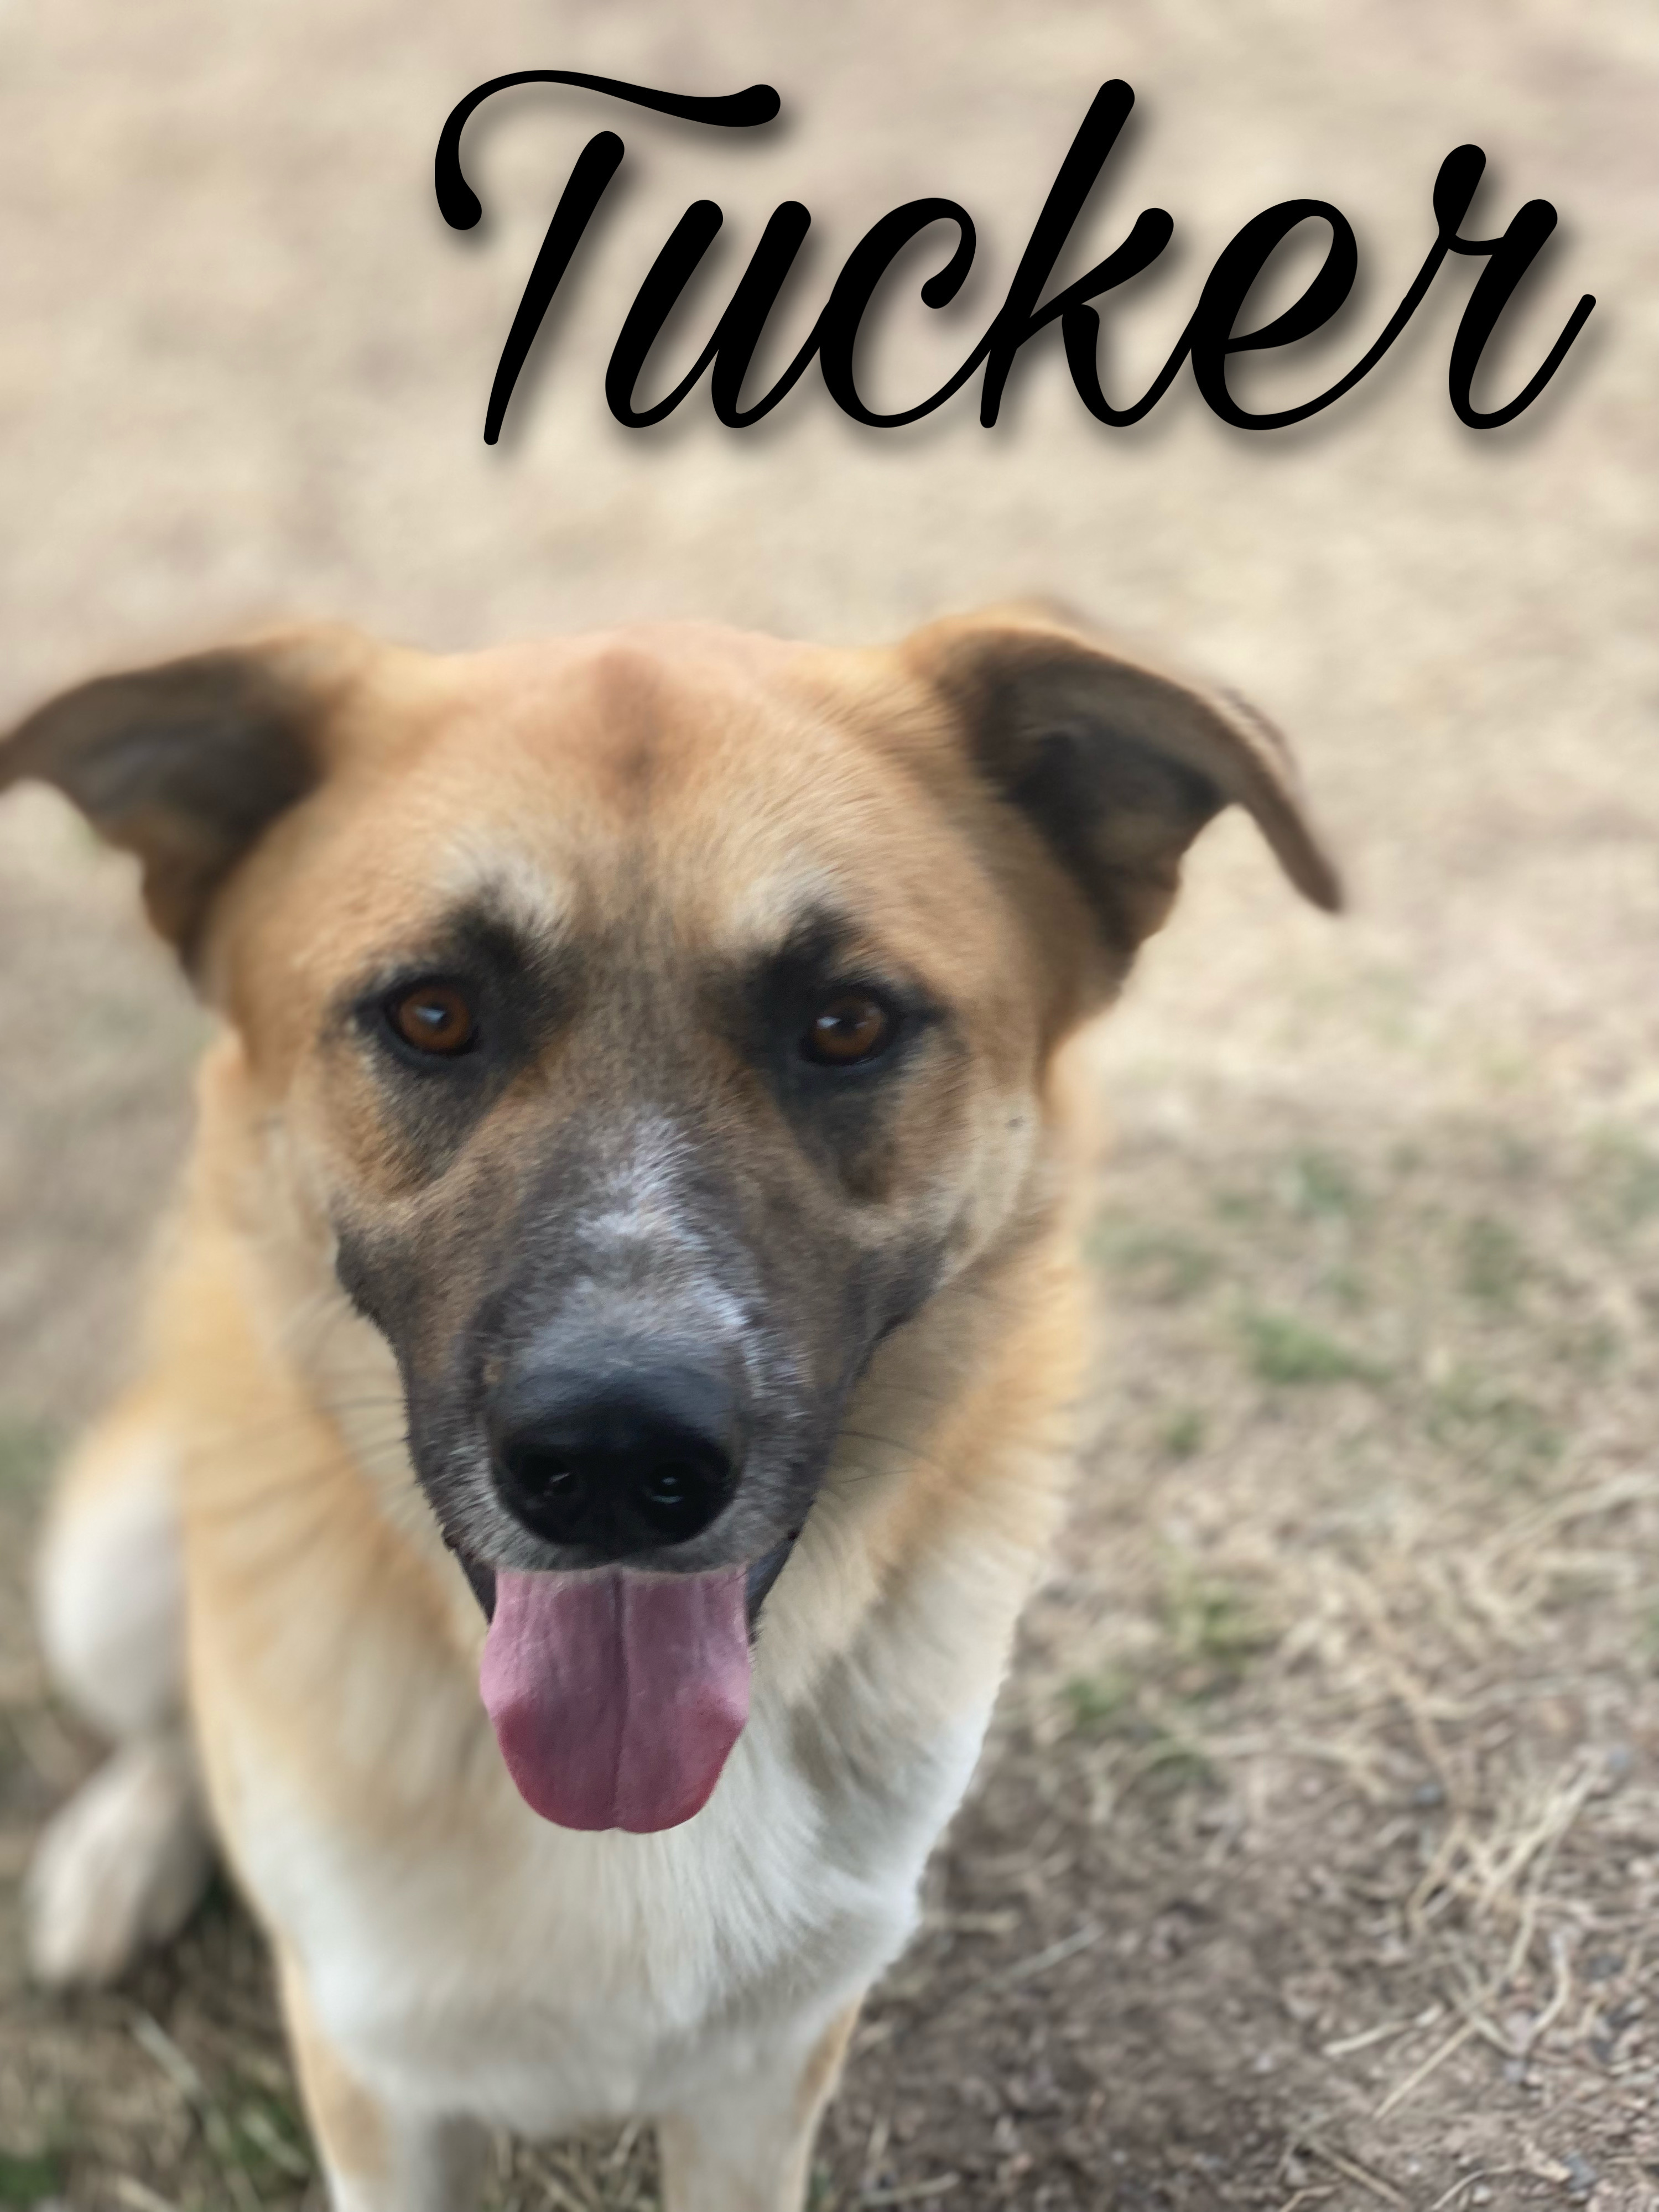 Tucker